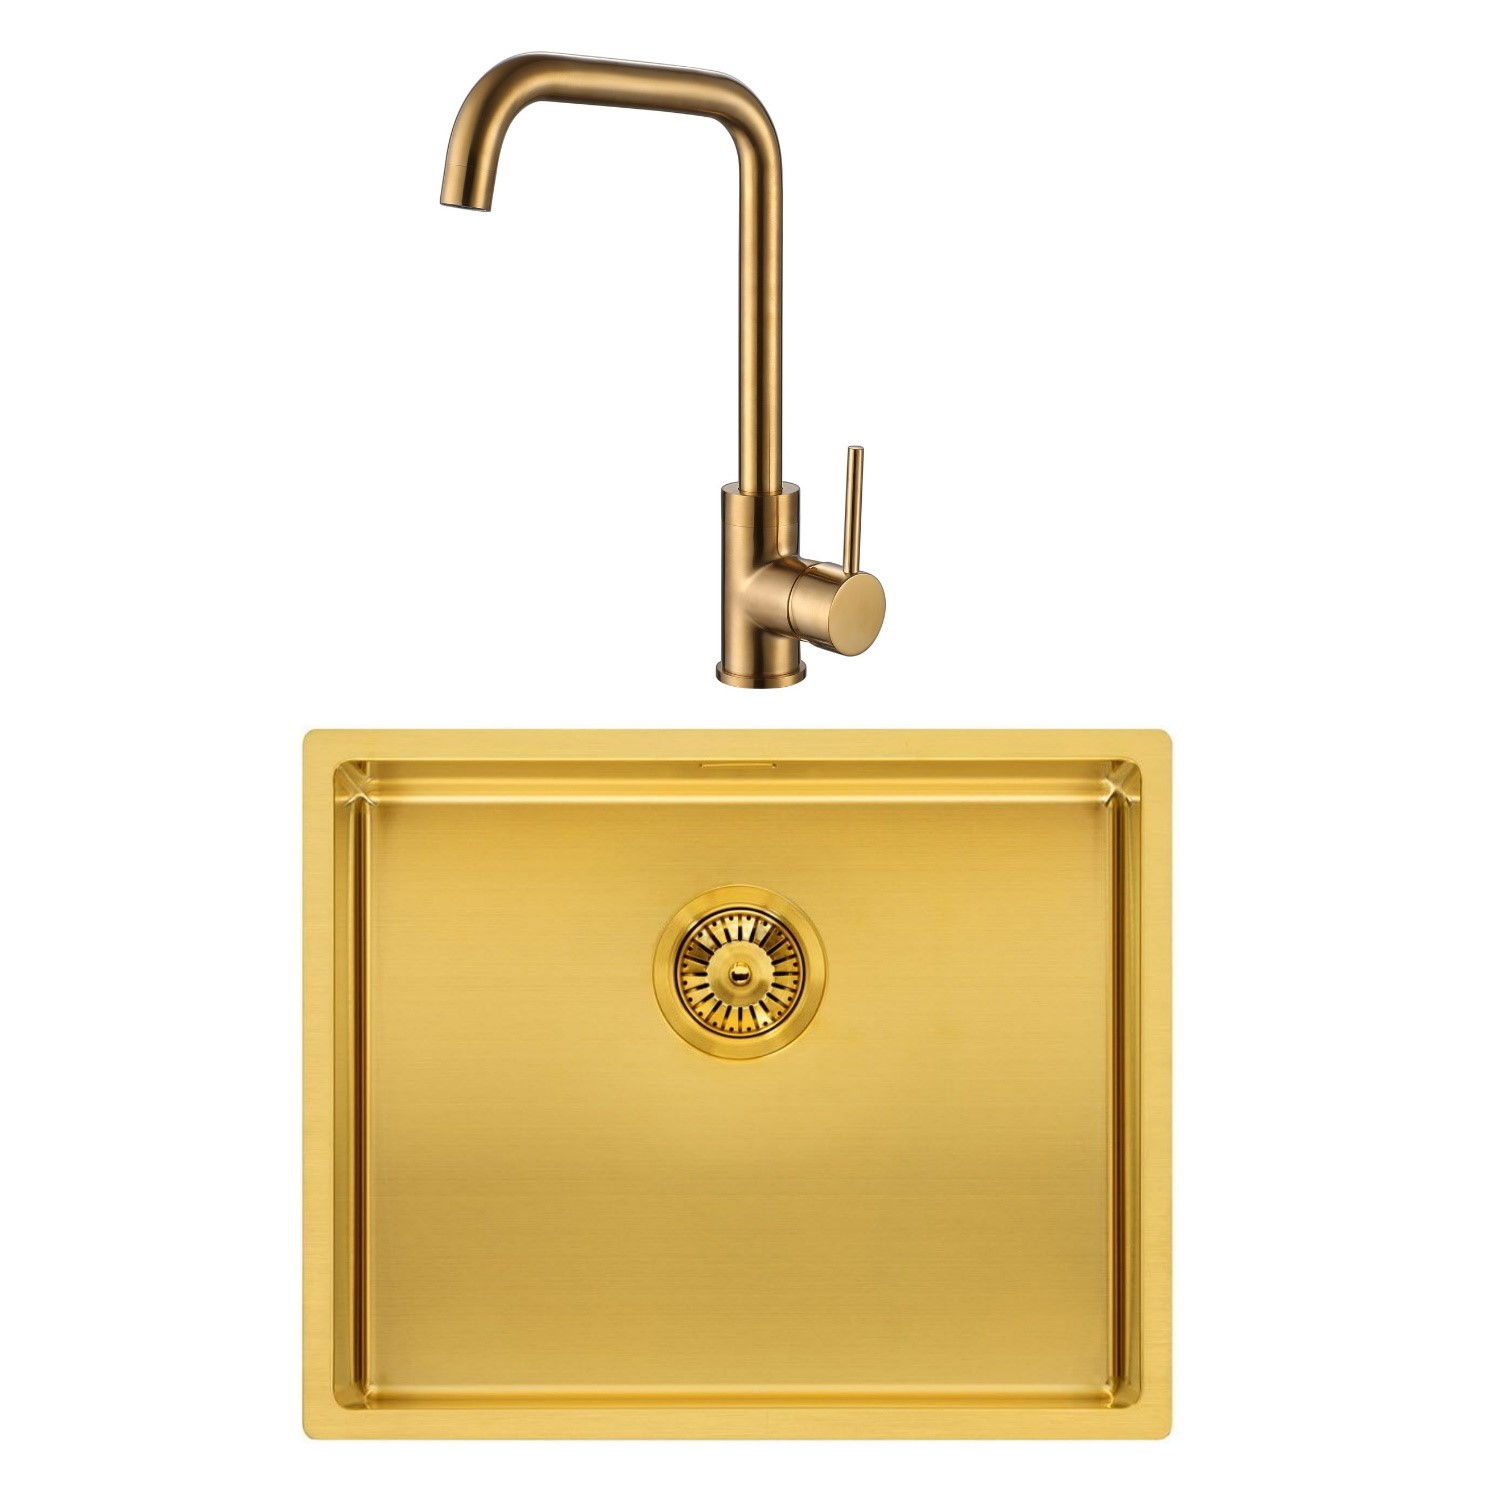 Reginox Single Bowl Kitchen Sink & Kitchen Mixer Tap in Gold